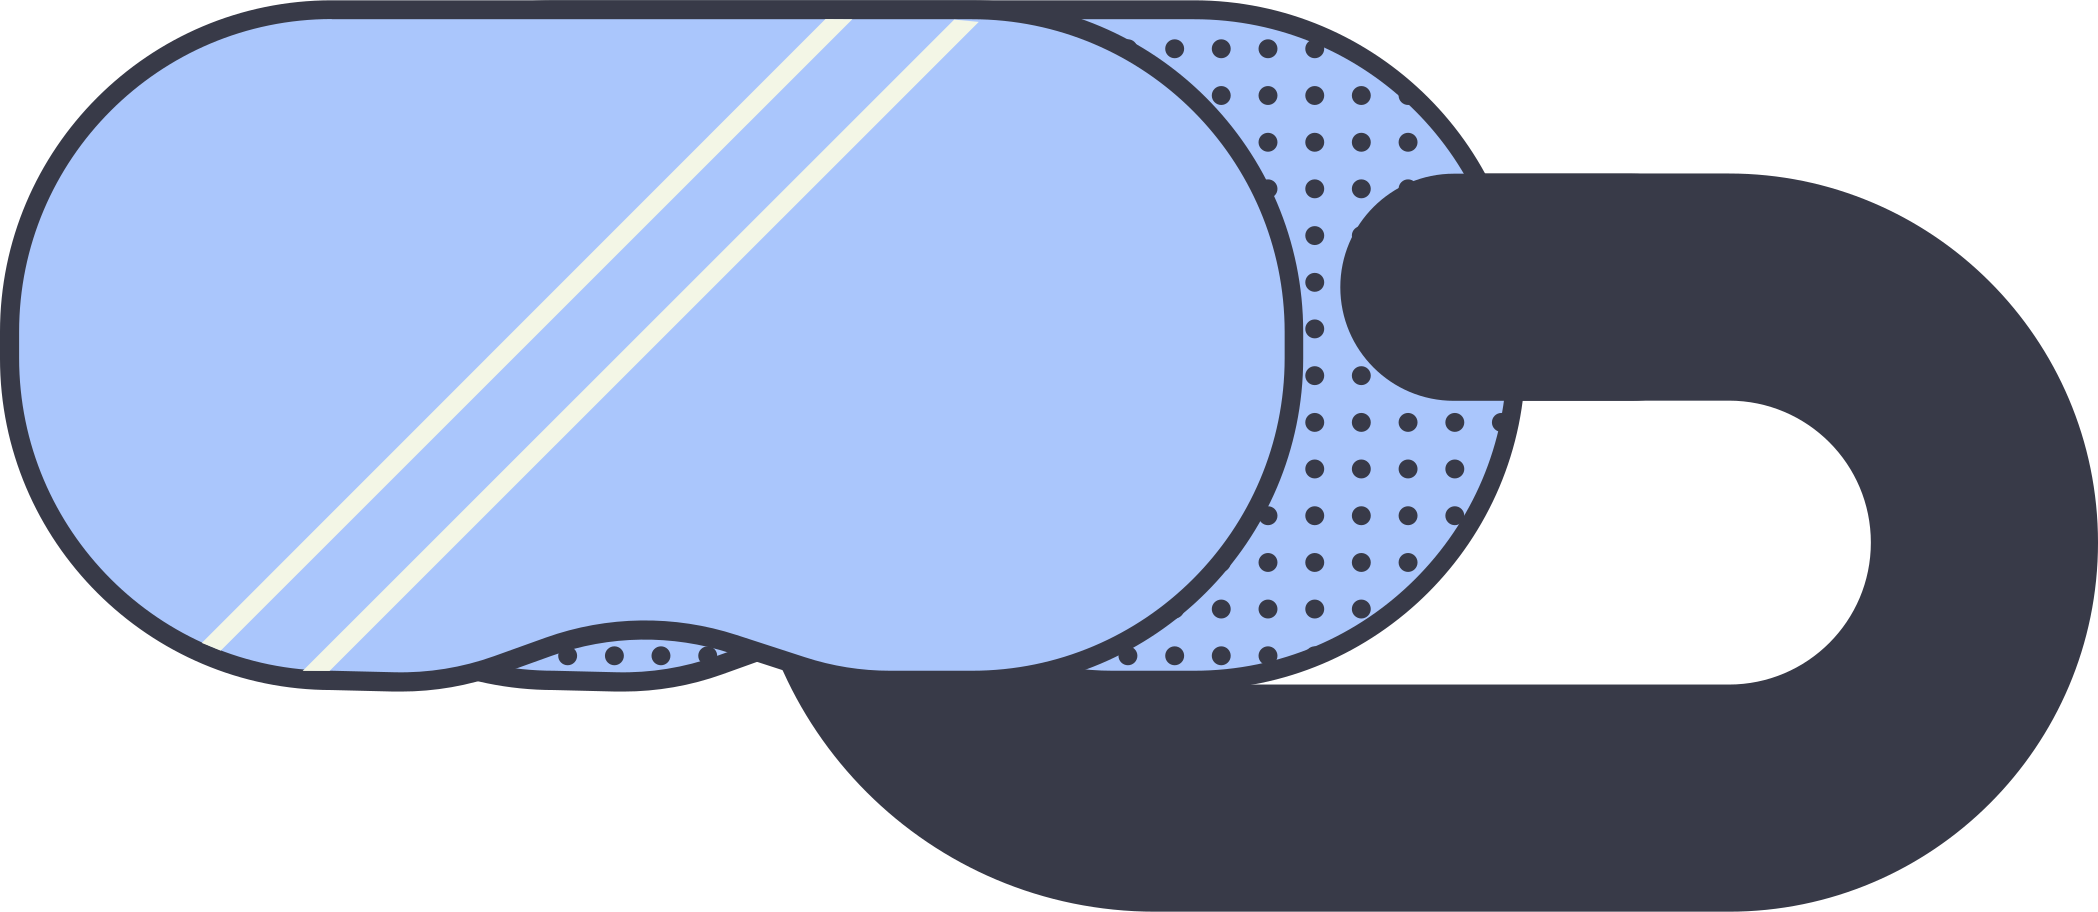 vr glasses Illustration in PNG, SVG